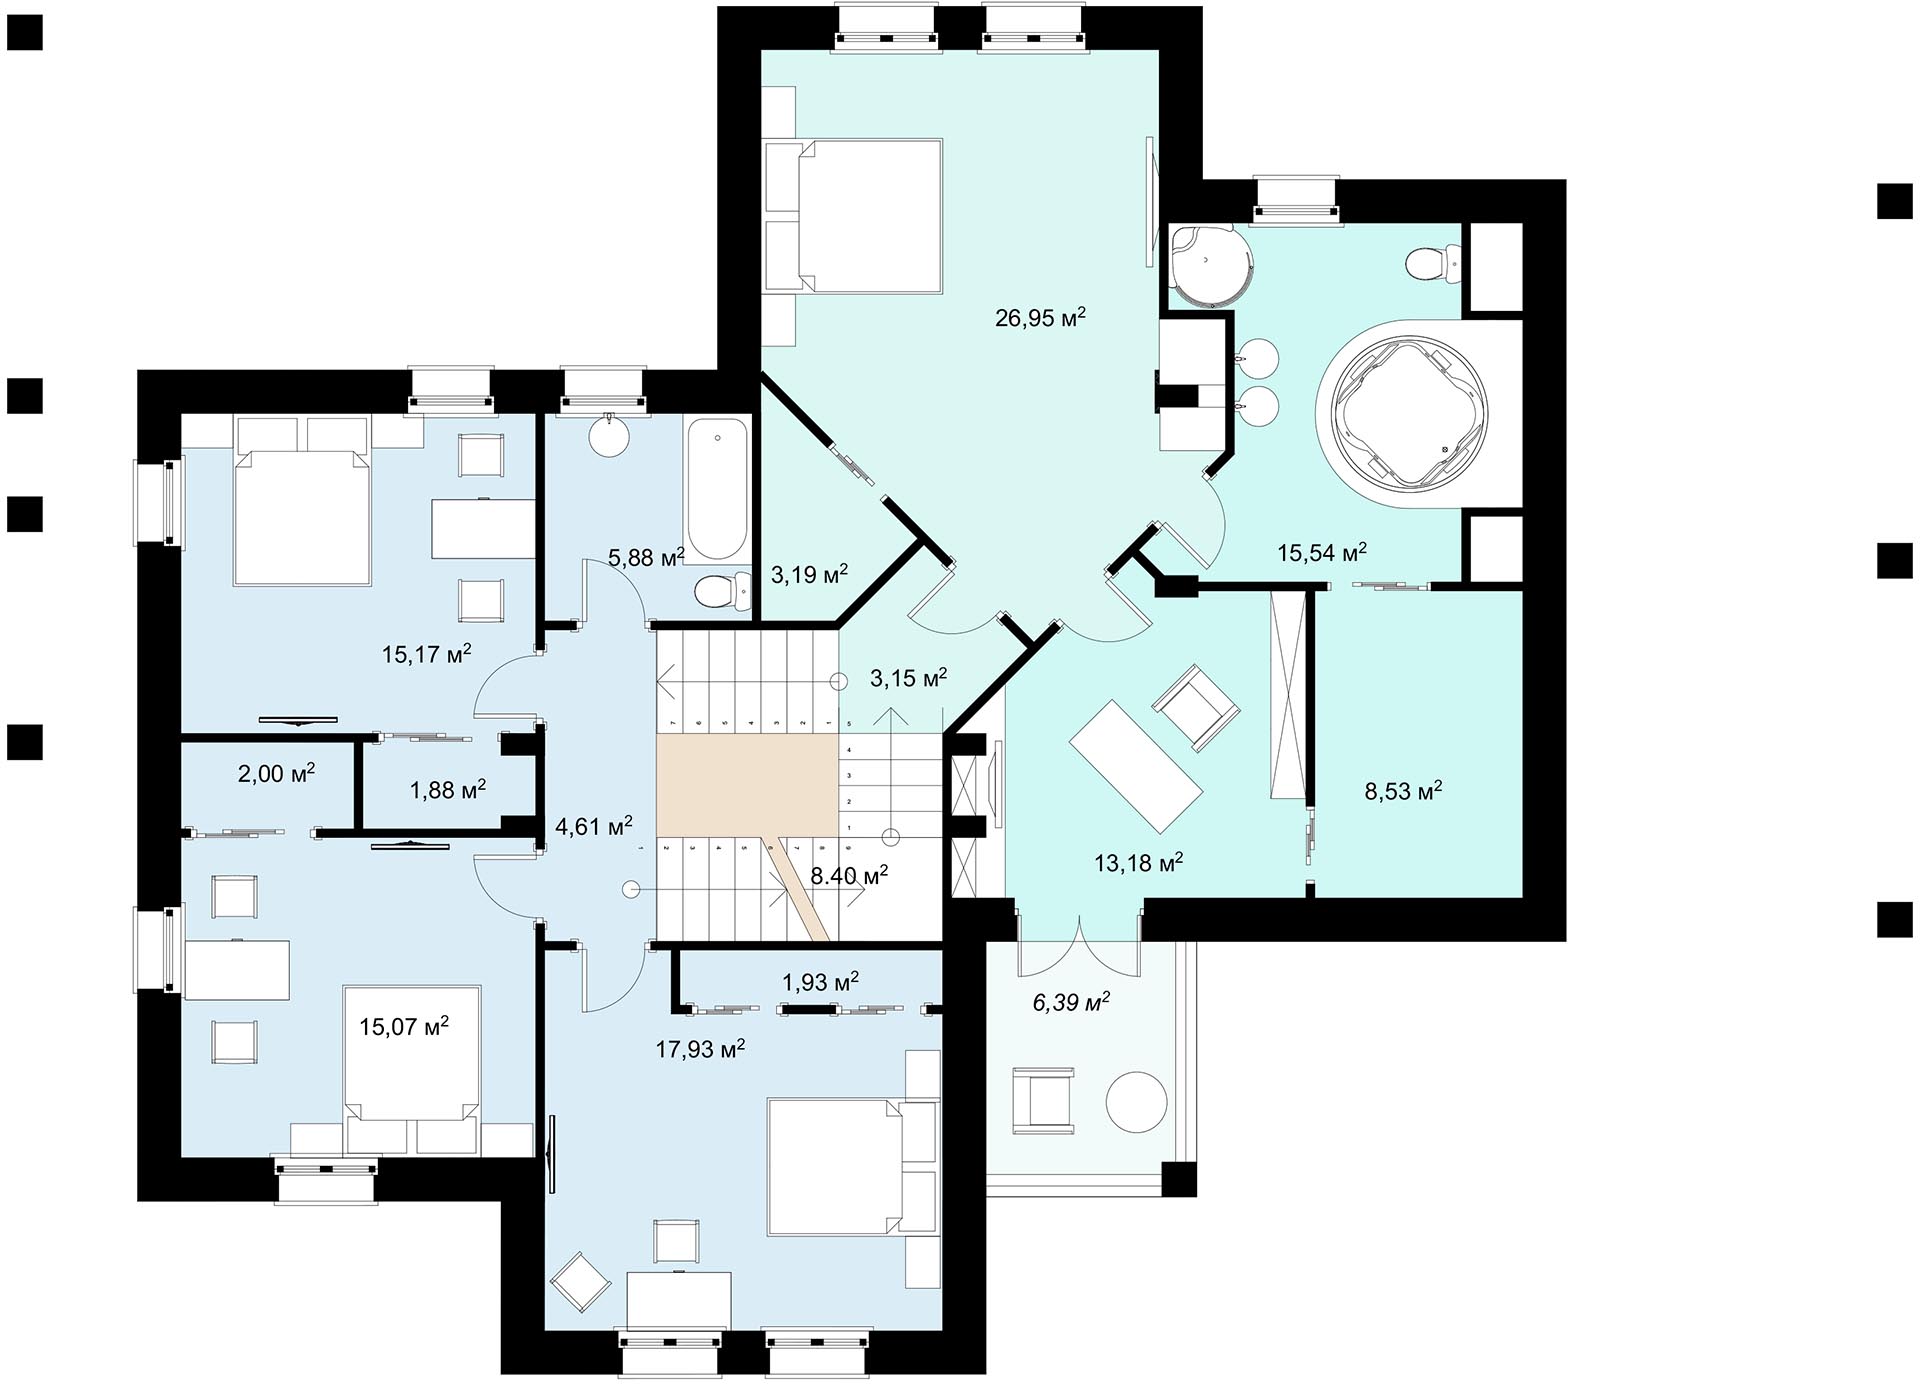 план 2 этажа 9 - комнатного шале - готовый проект от Инваполис